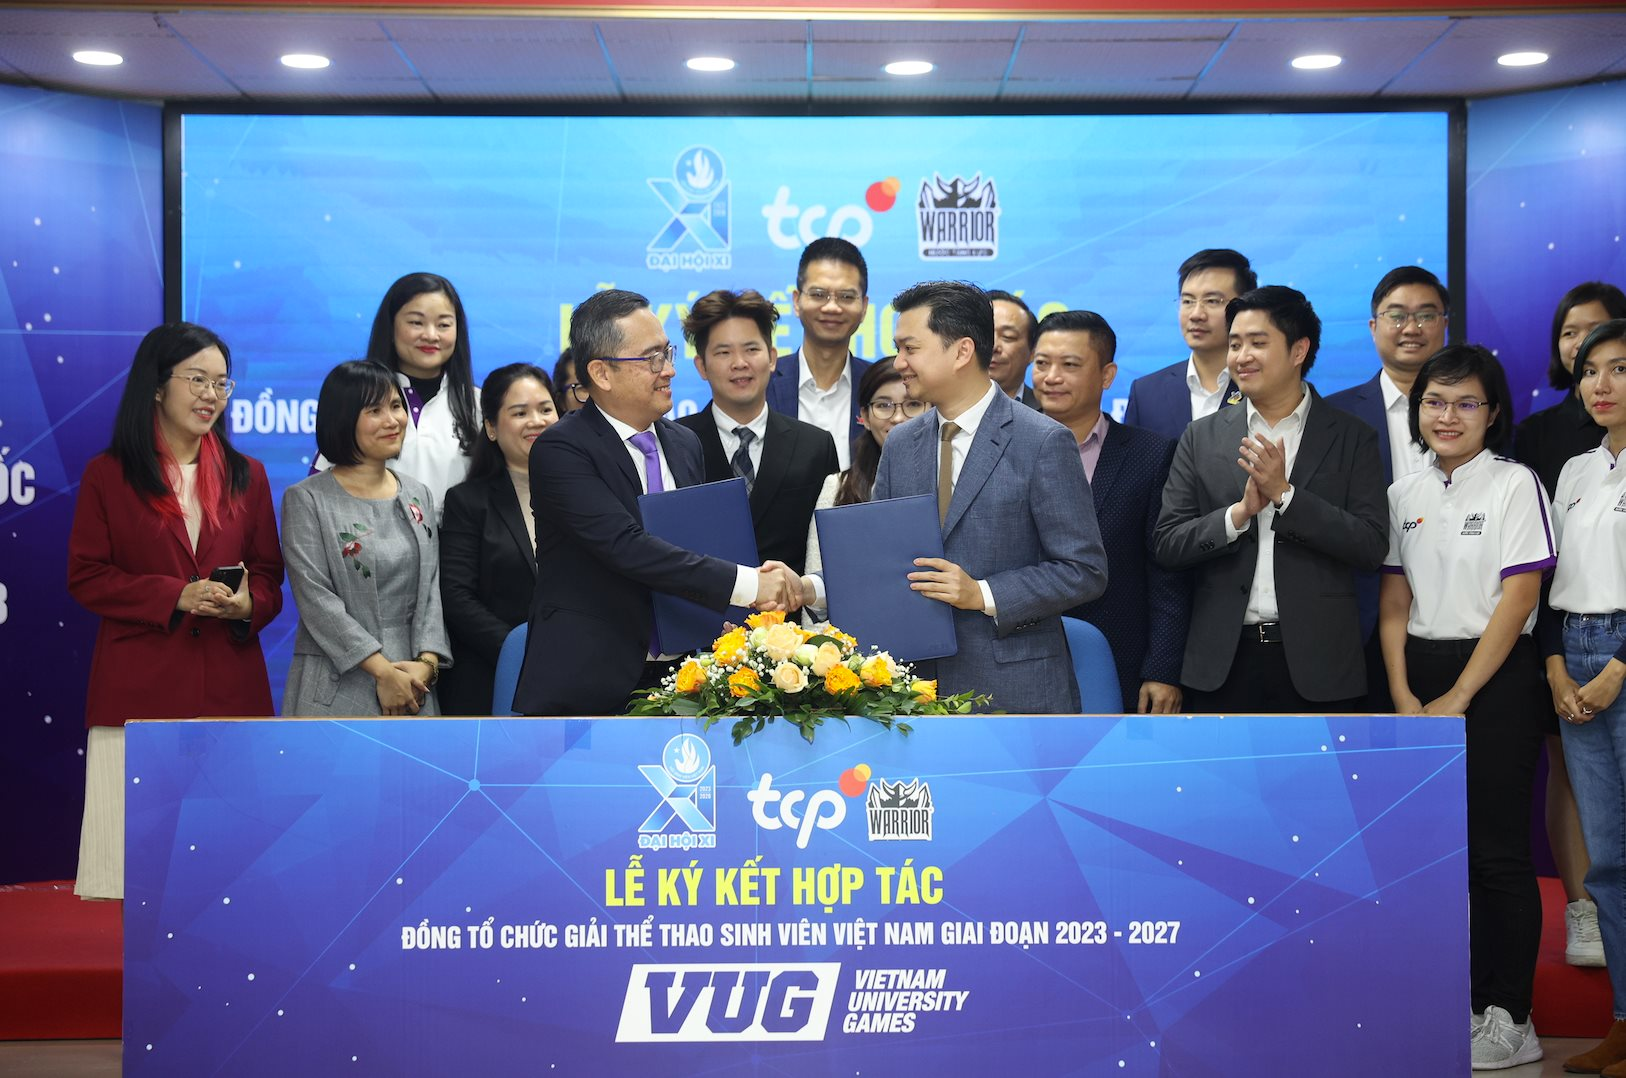 Giải thể thao VUG dành cho sinh viên Việt Nam sẽ có nhà tài trợ trong 5 năm học tới